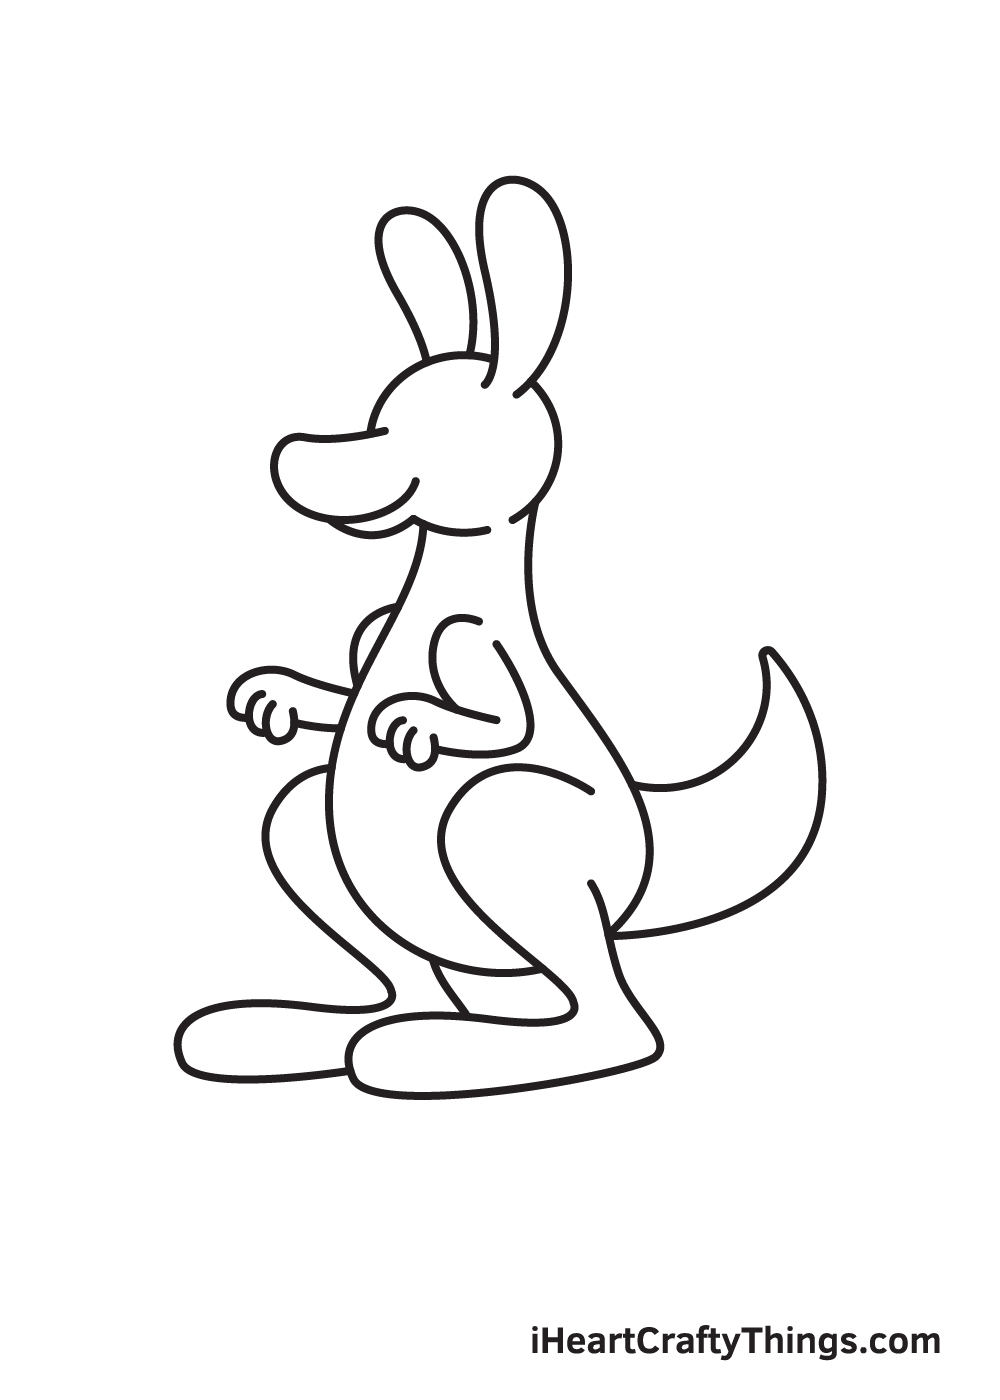 kangaroo drawing step 7